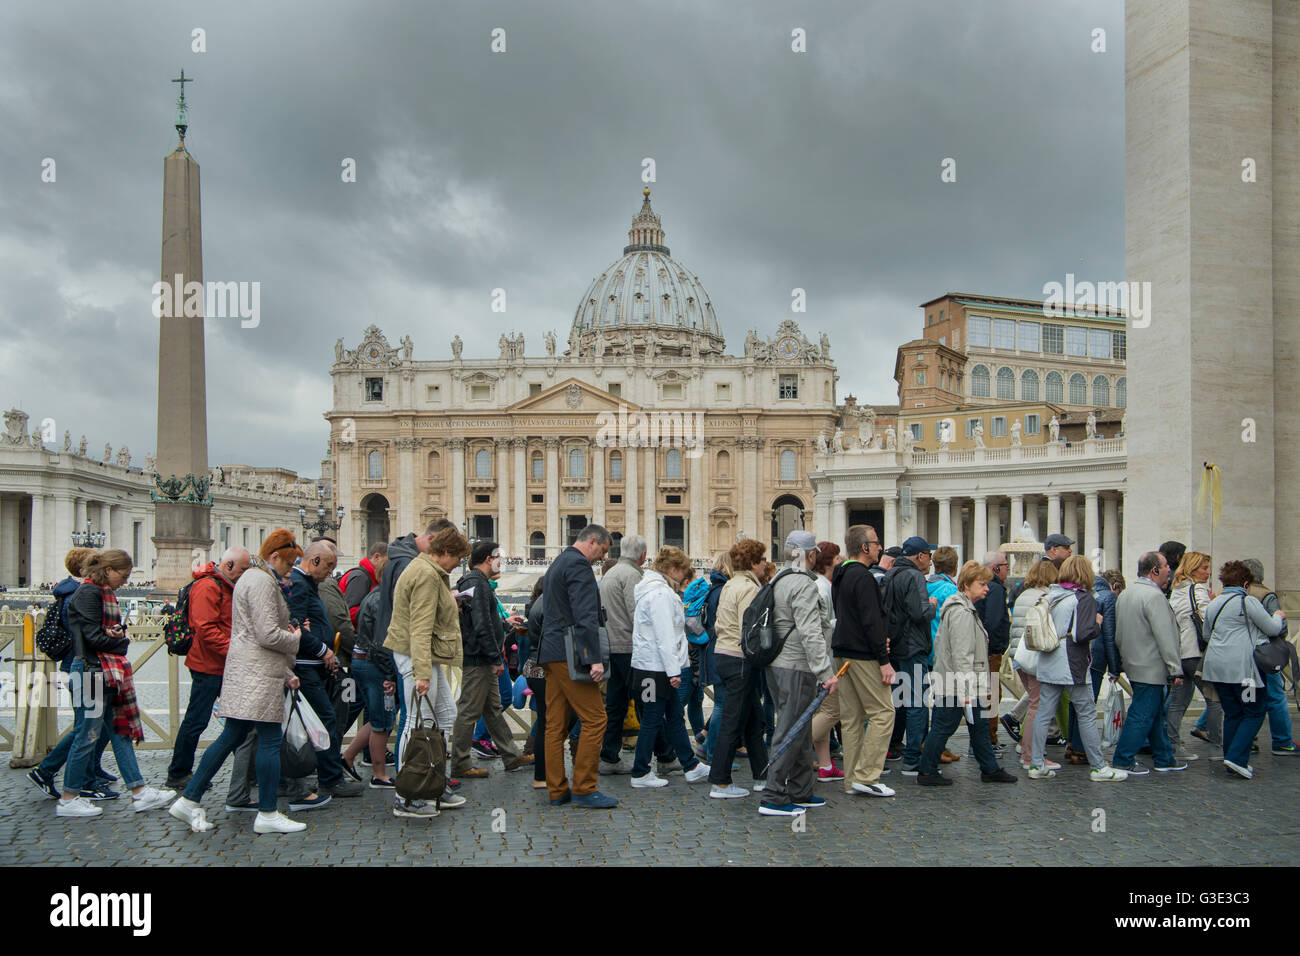 Italien, Rom Vatikan, Touristenschlange vor dem Petersdom Foto Stock